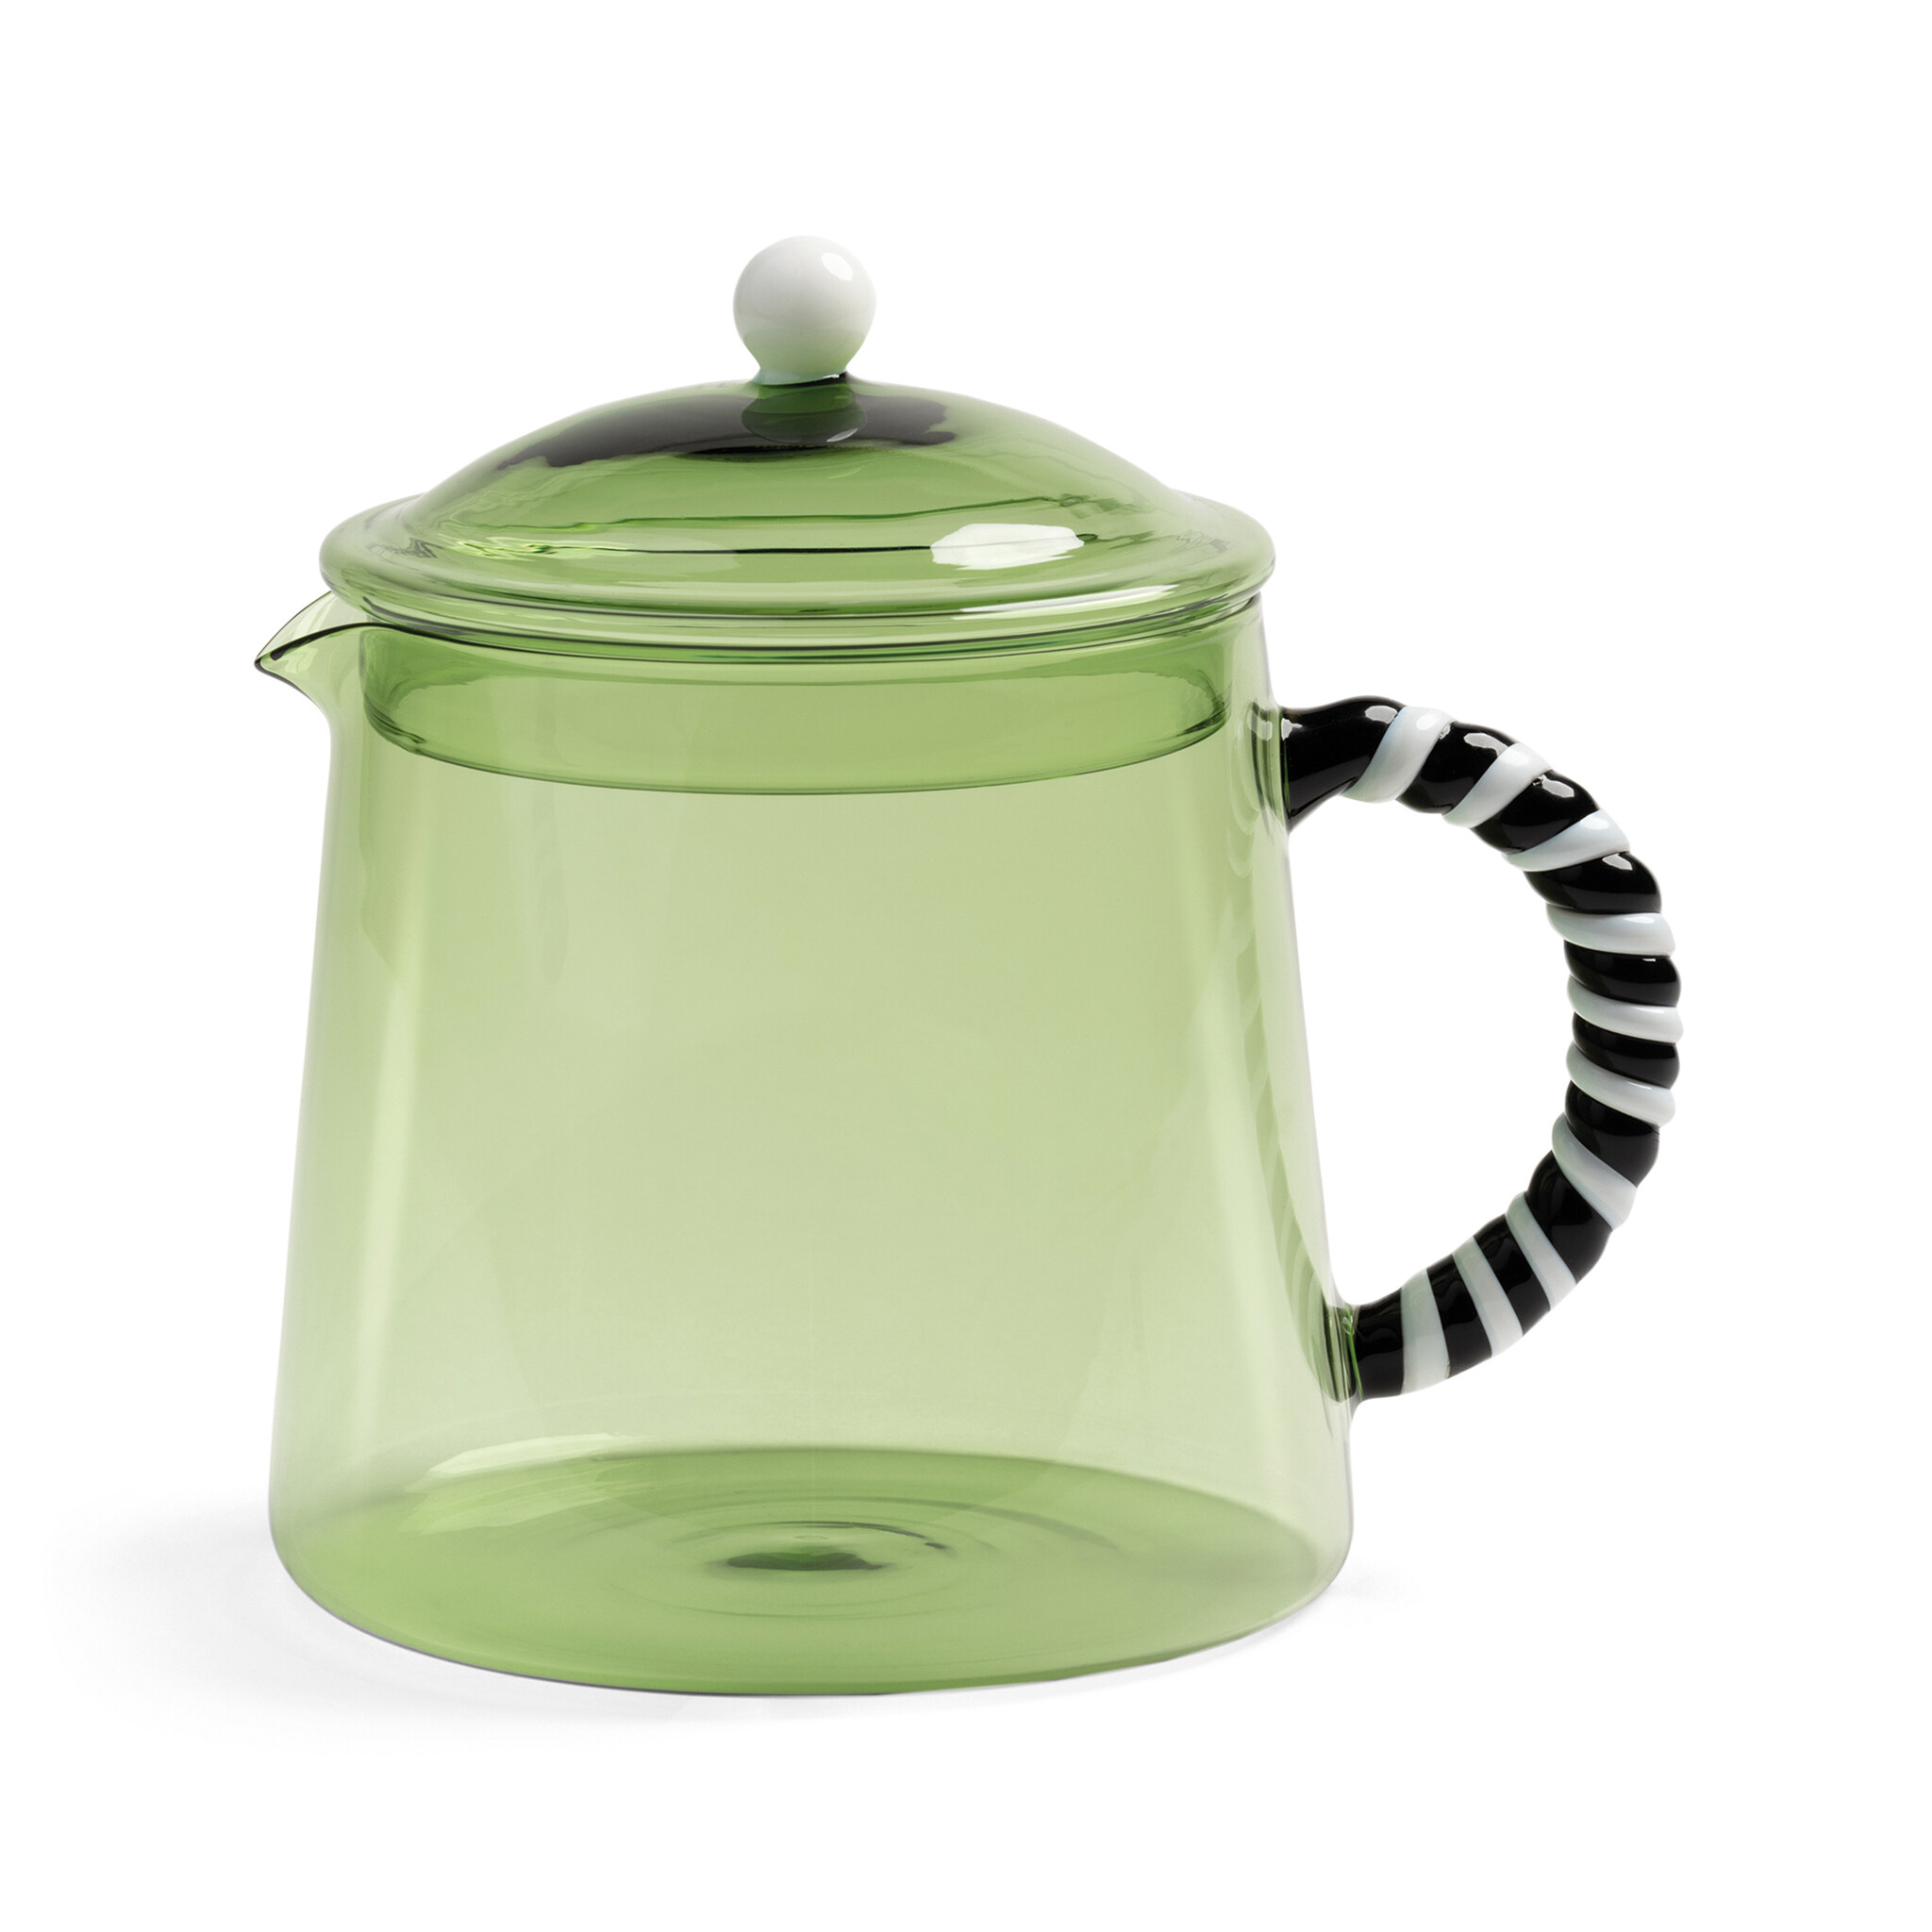 &klevering Teapot Duet Green